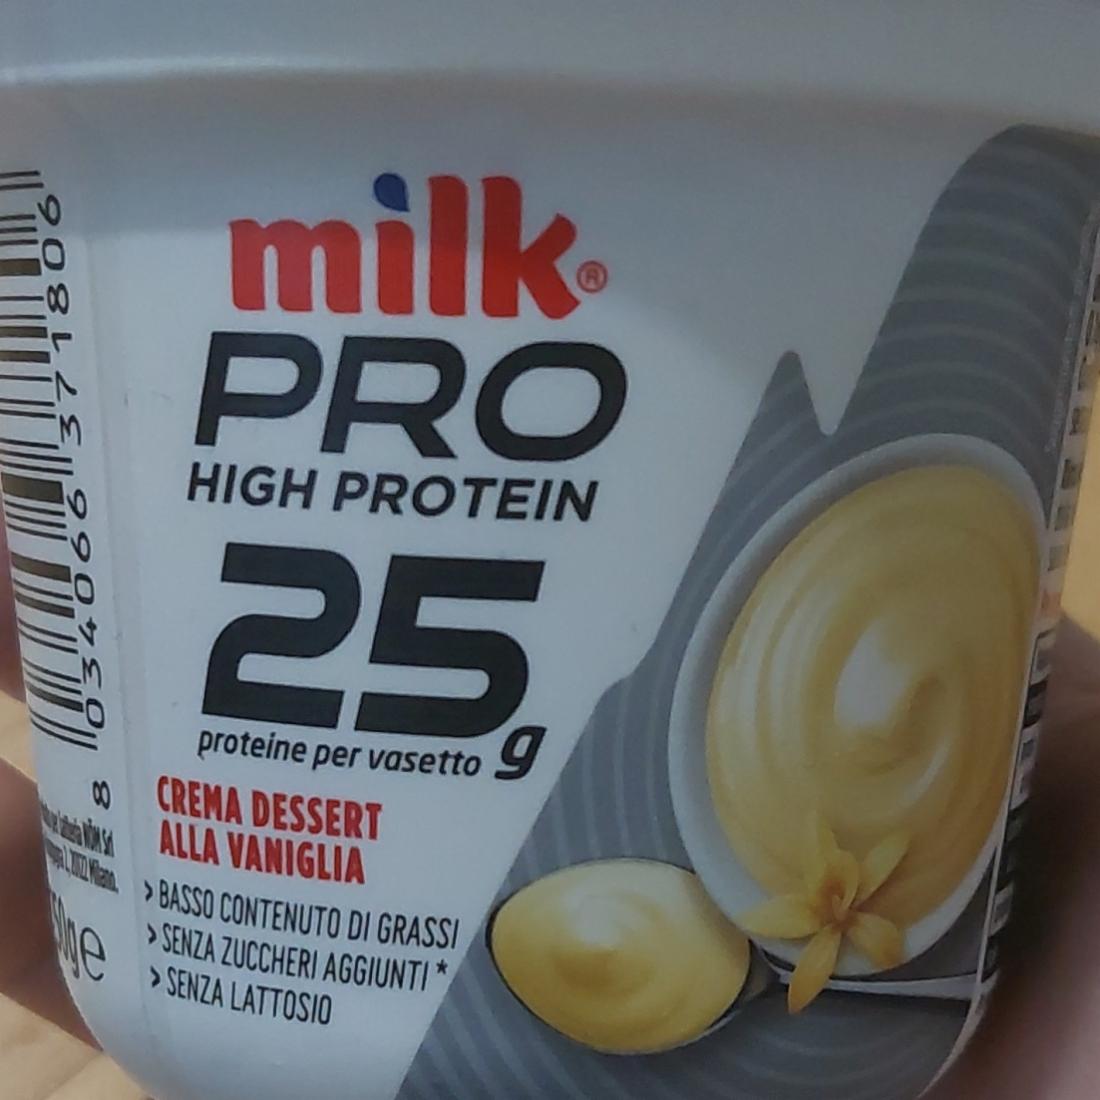 Фото - High protein alla vaniglia Milk pro